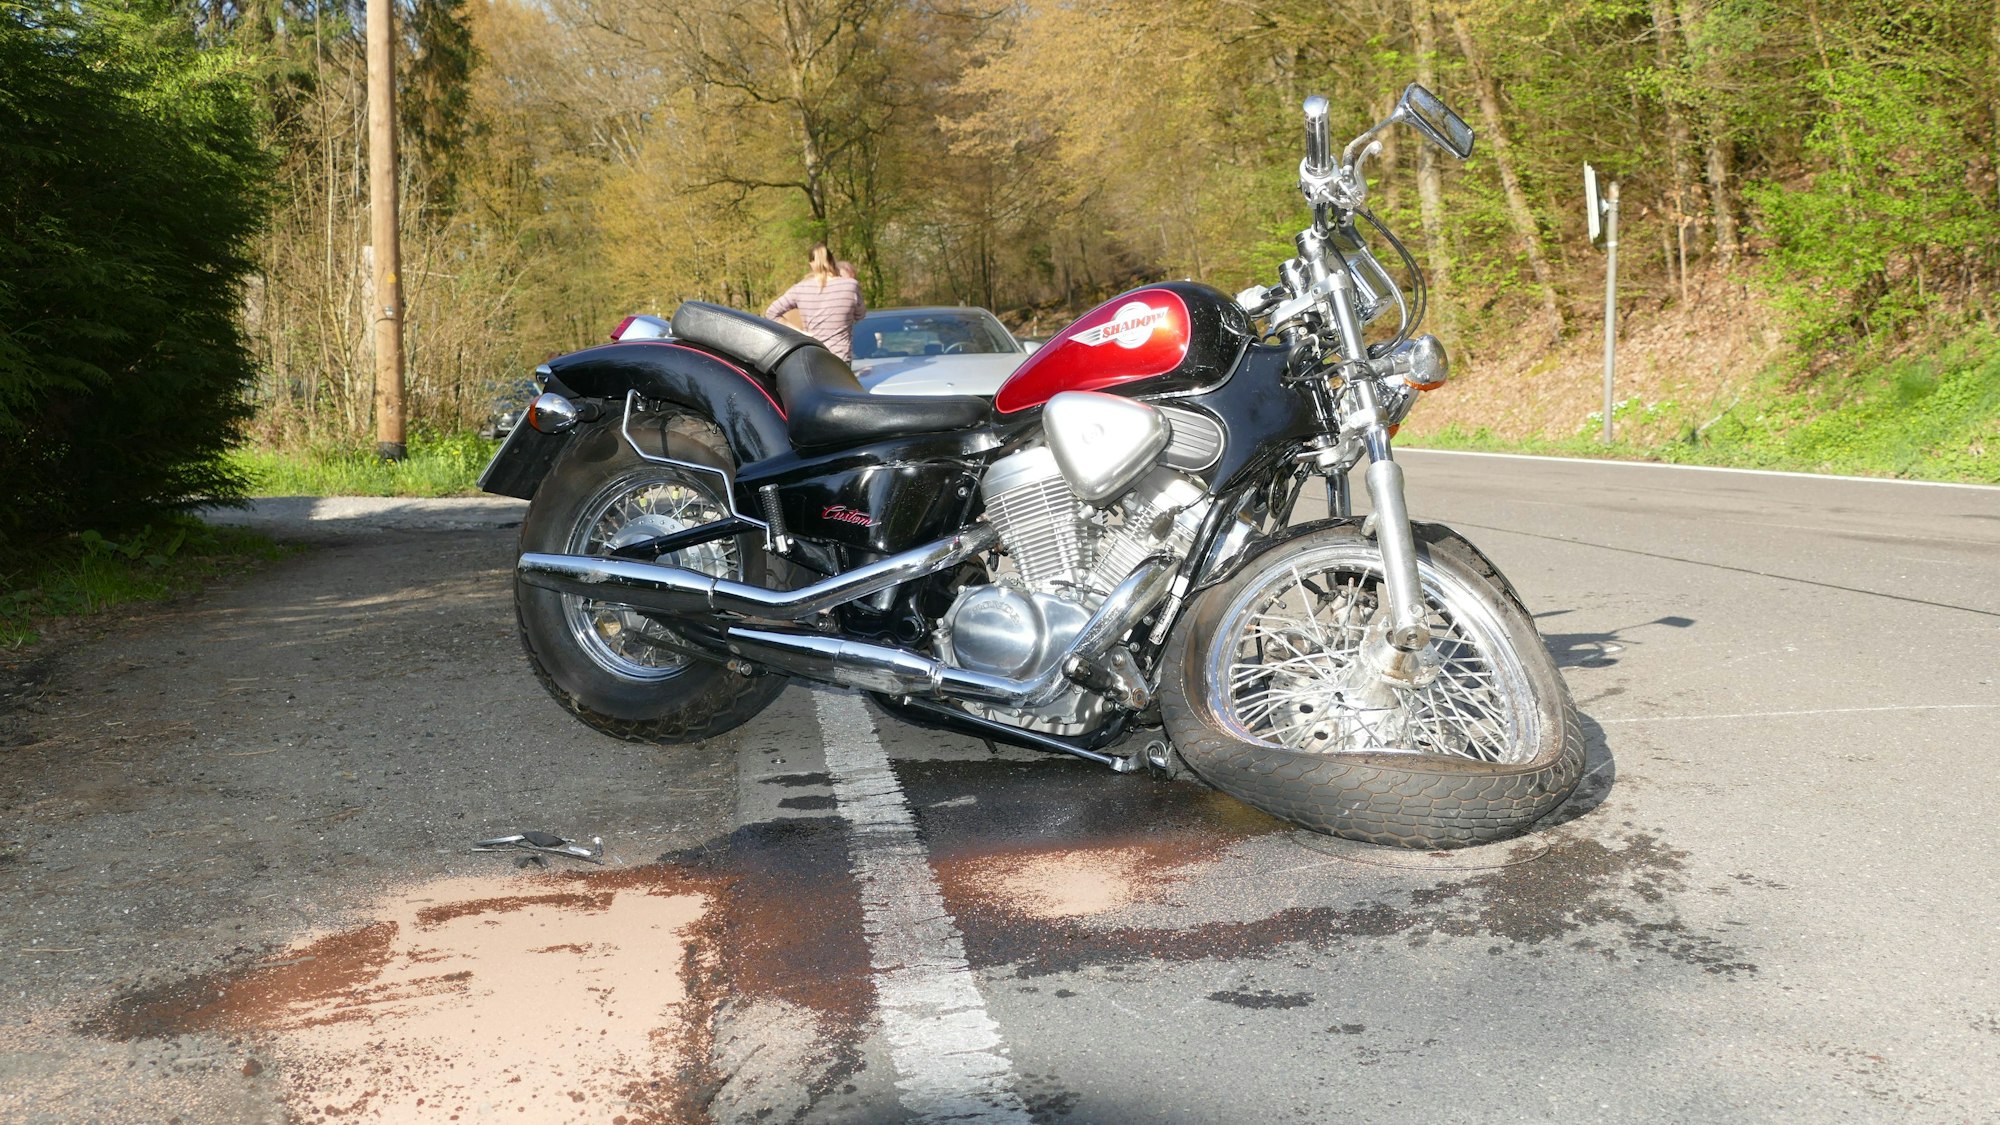 Ein Motorrad mit demoliertem Vorderrad steht auf einer Straße.